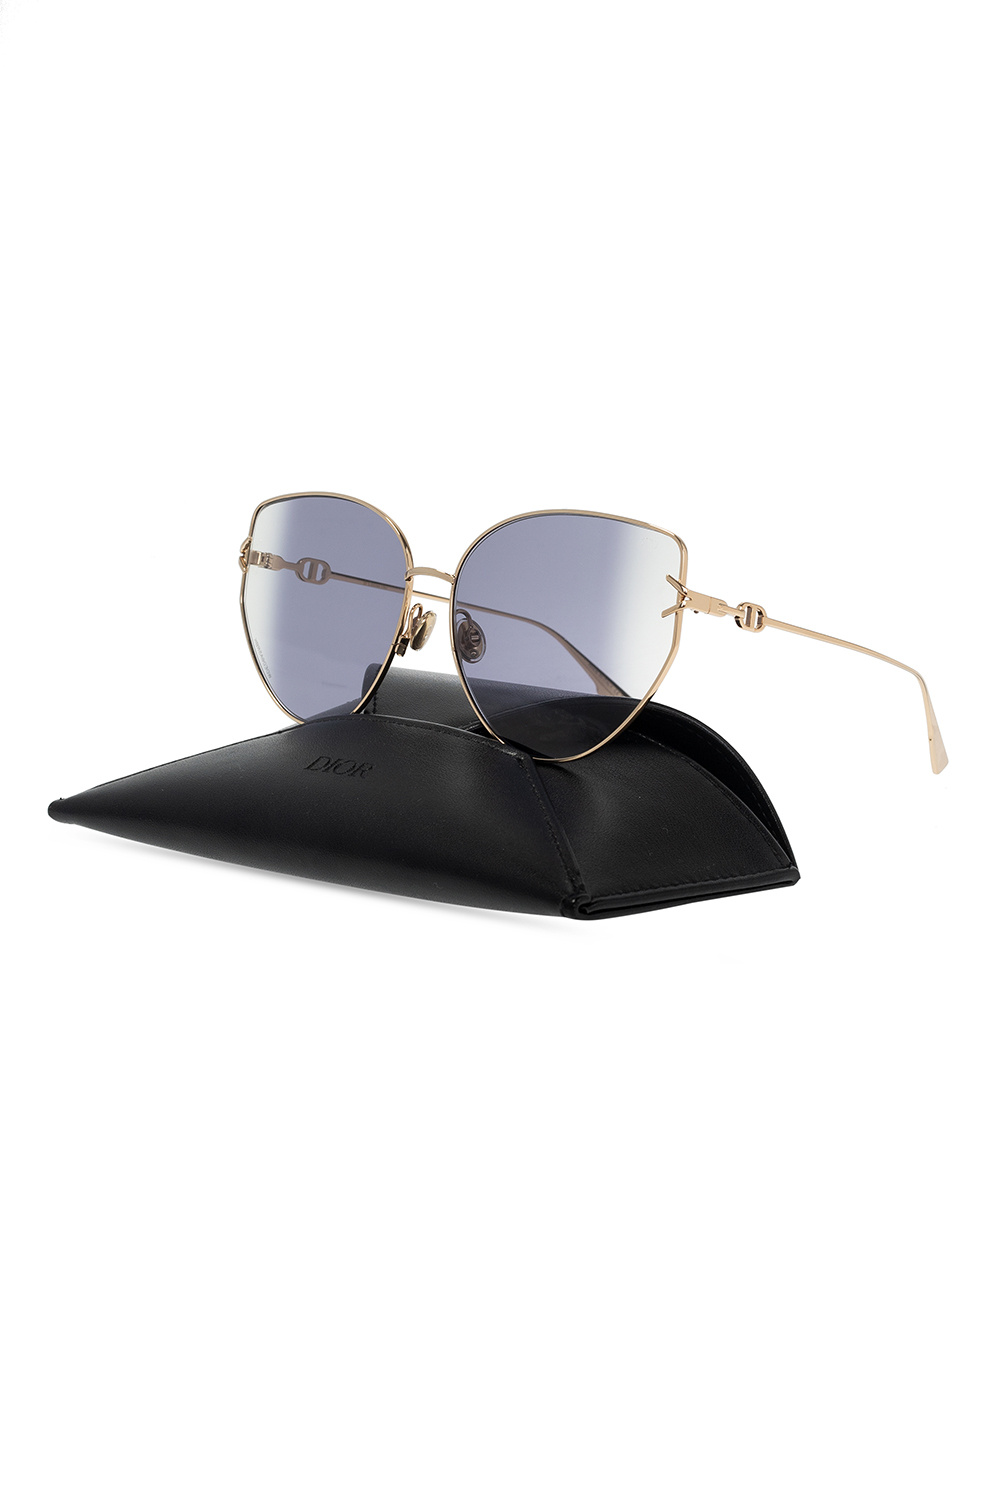 Dior ‘Gipsy 2’ Demi sunglasses